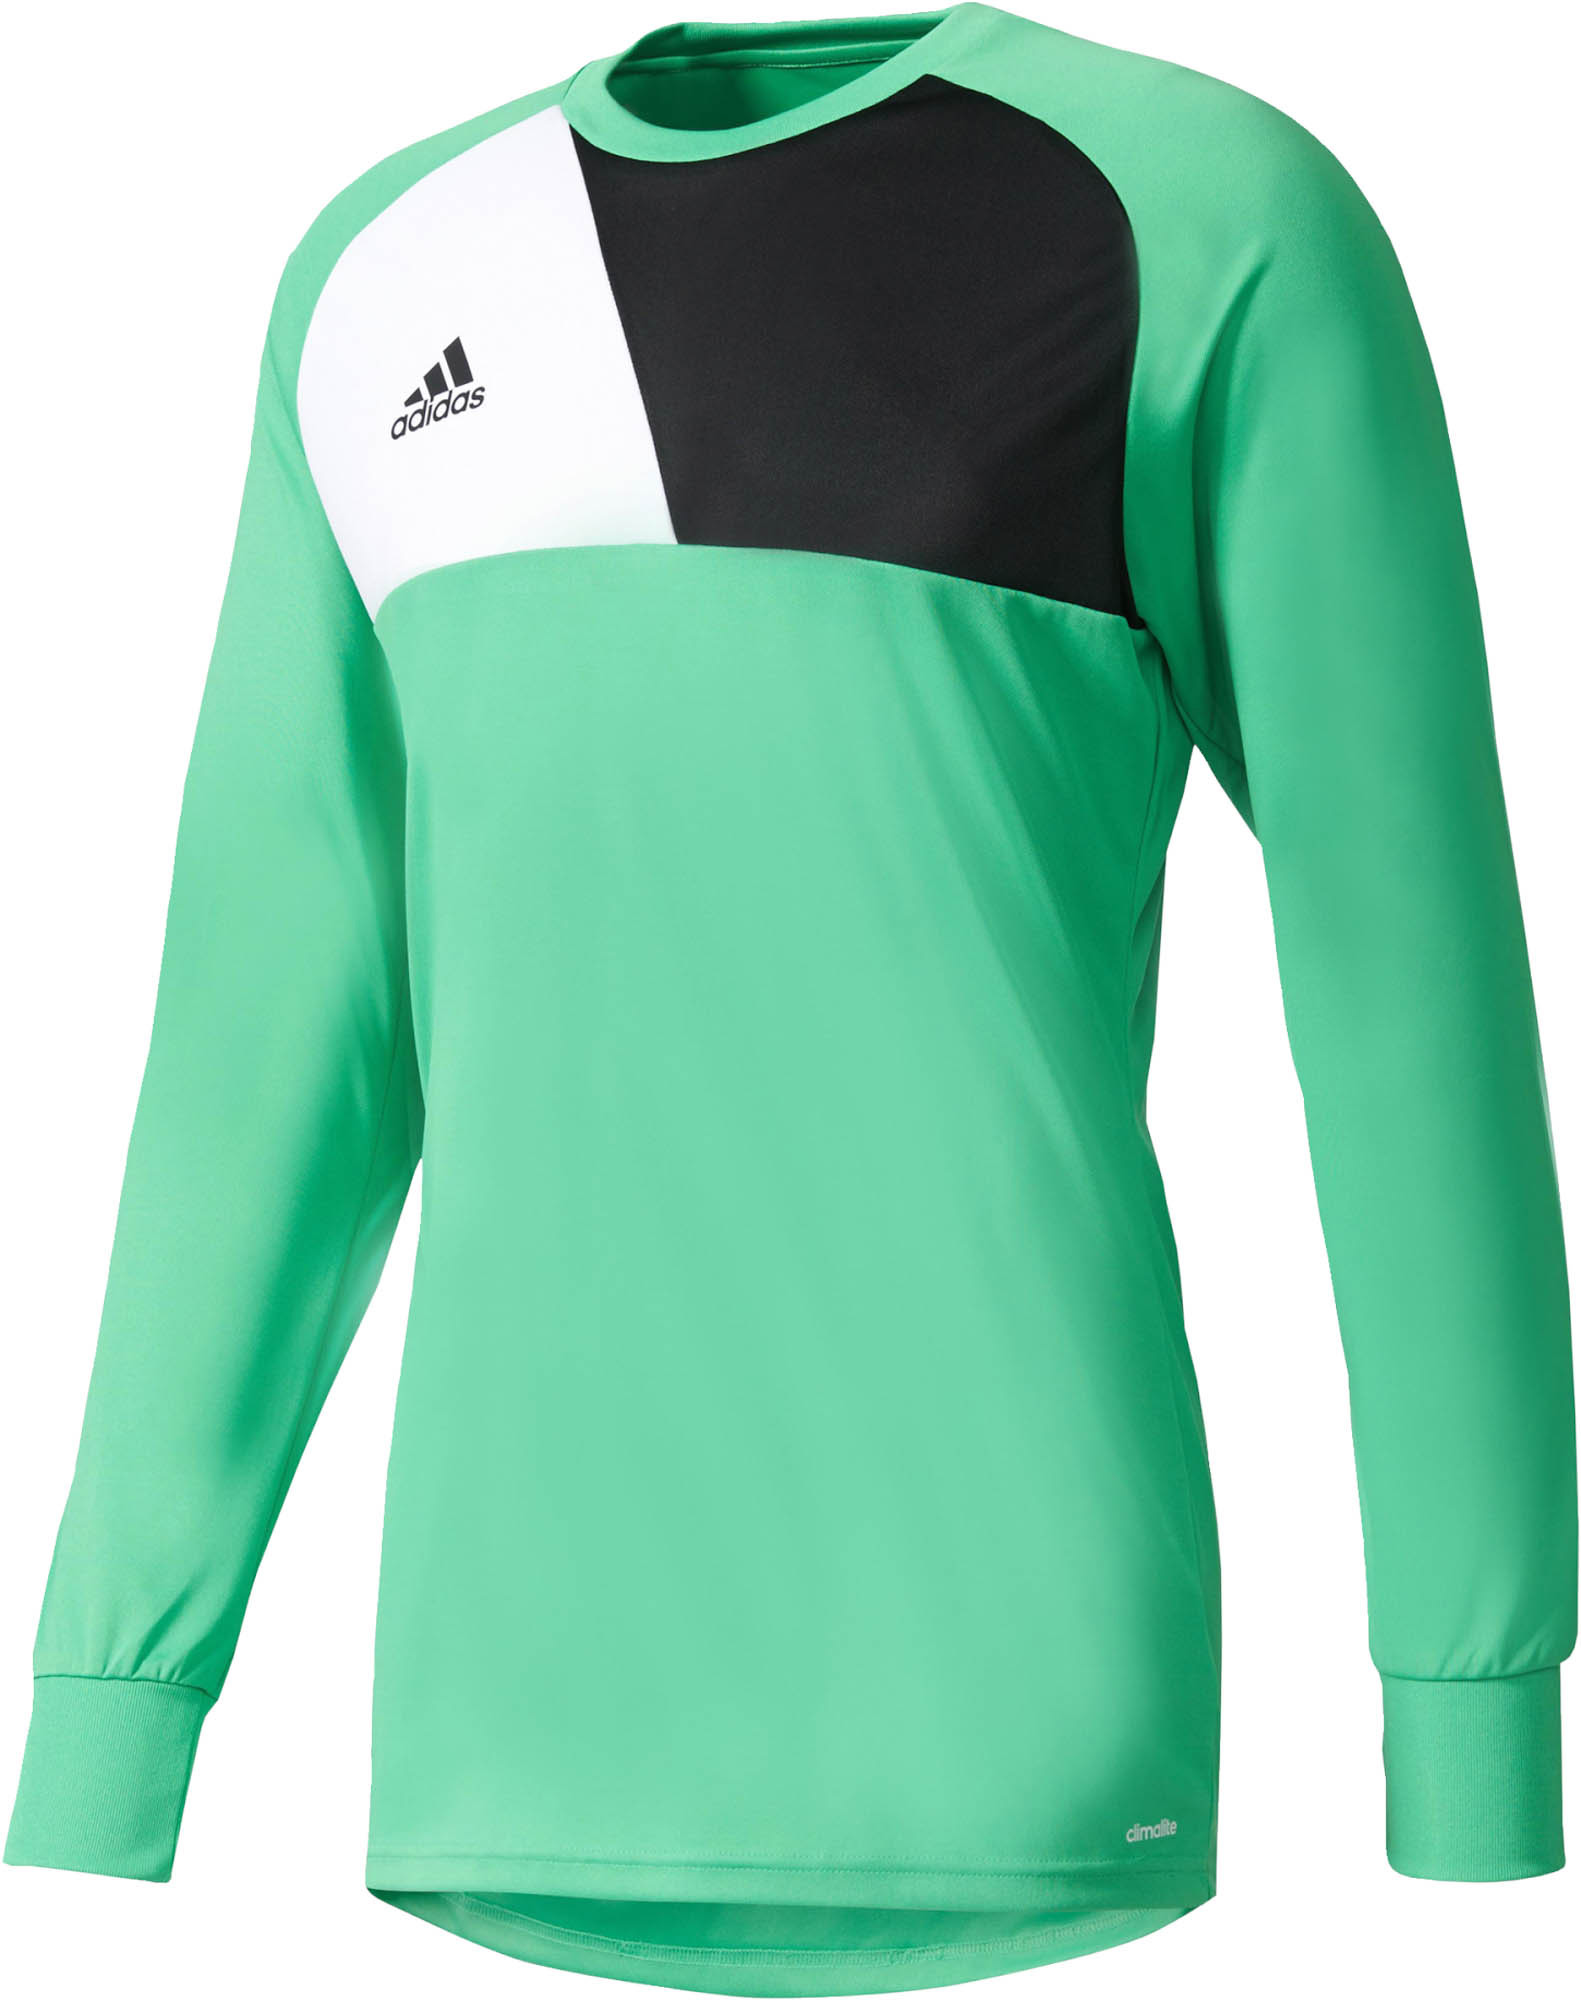 adidas Assita 17 Goalie Jersey- Green Goalkeeper Jersey